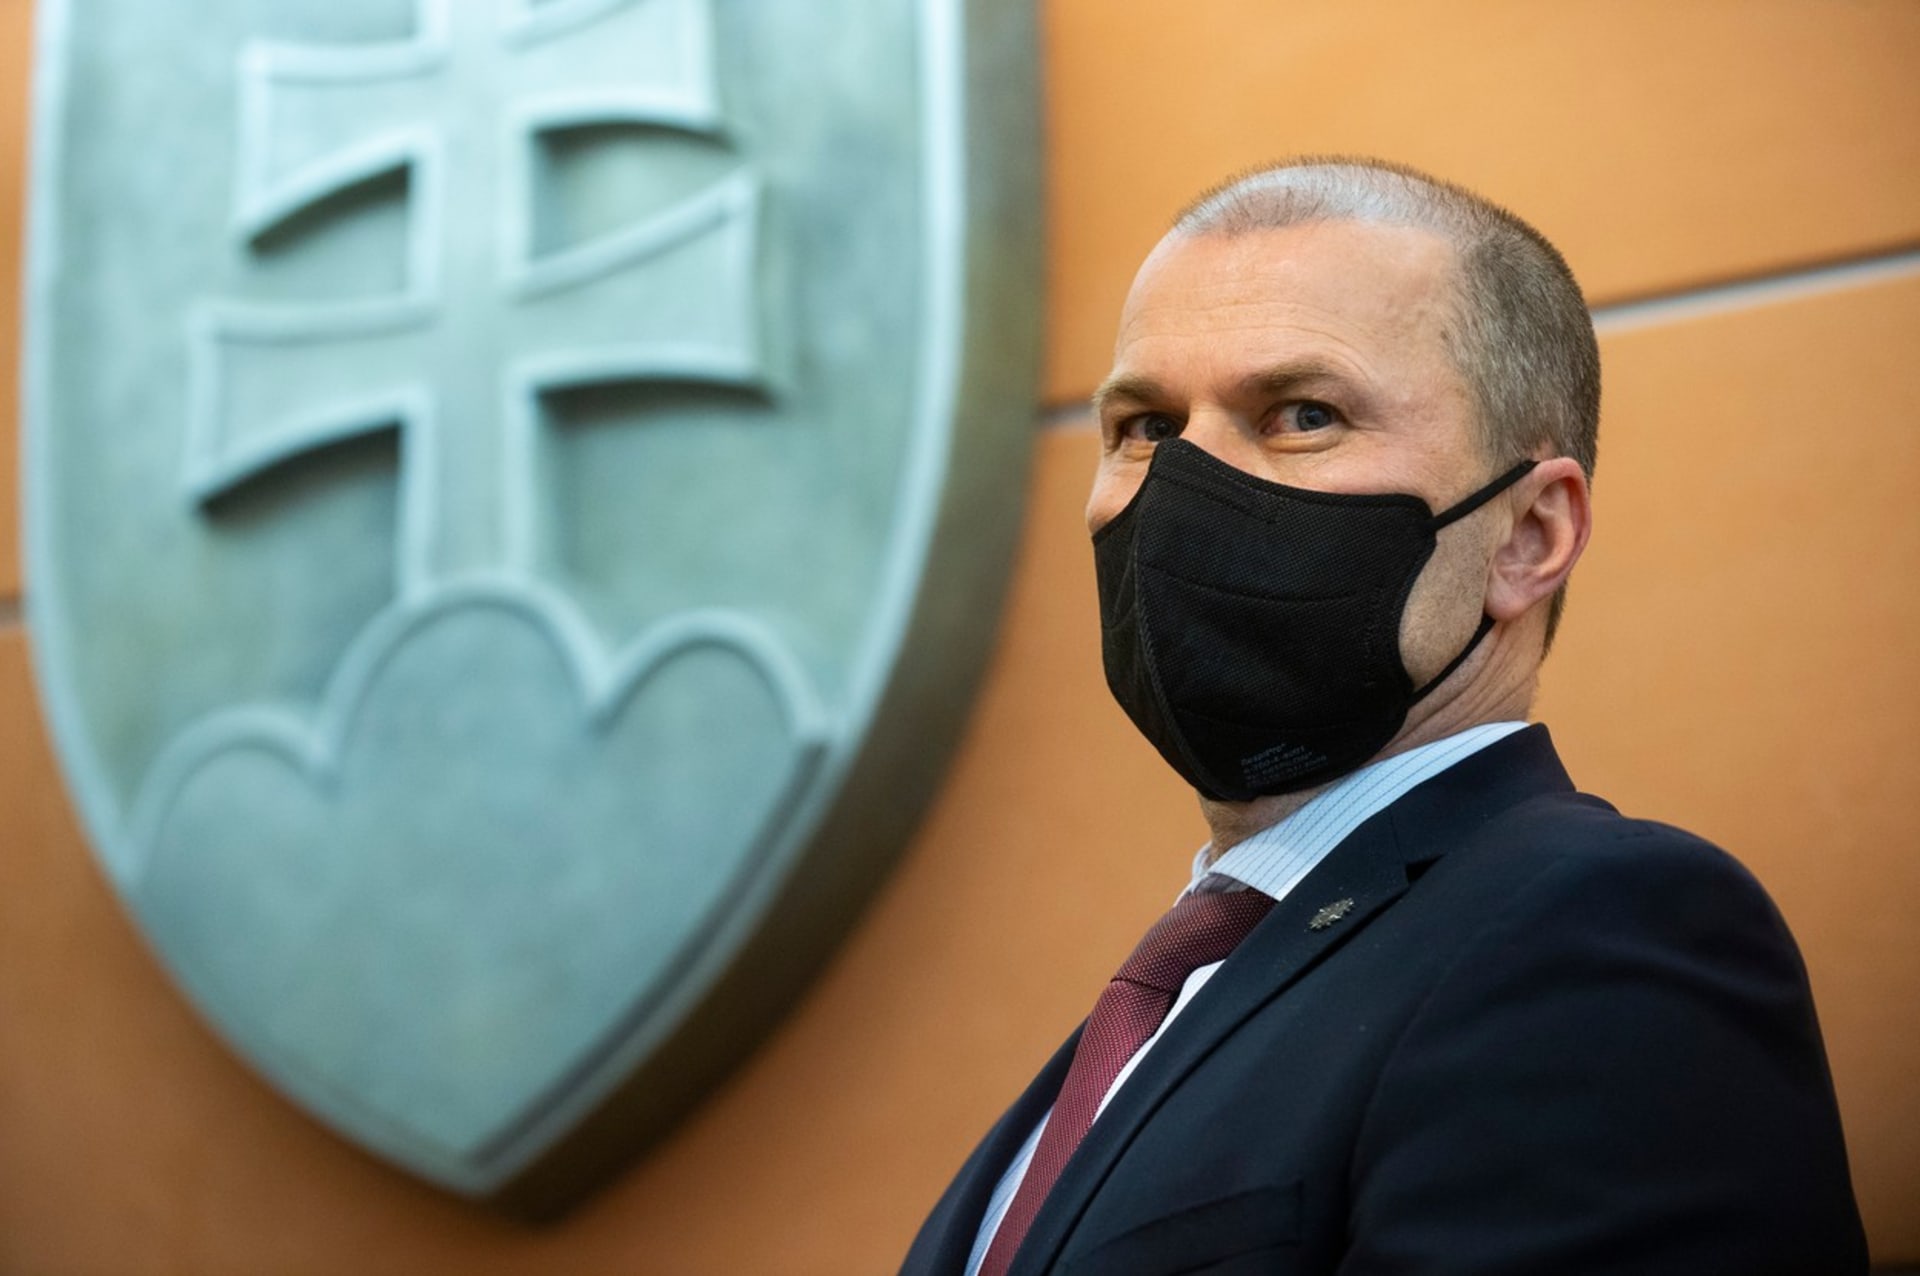 Slovenská prokuratura obvinila ze zneužití pravomocí a z maření spravedlnosti policejního prezidenta Petera Kovaříka.